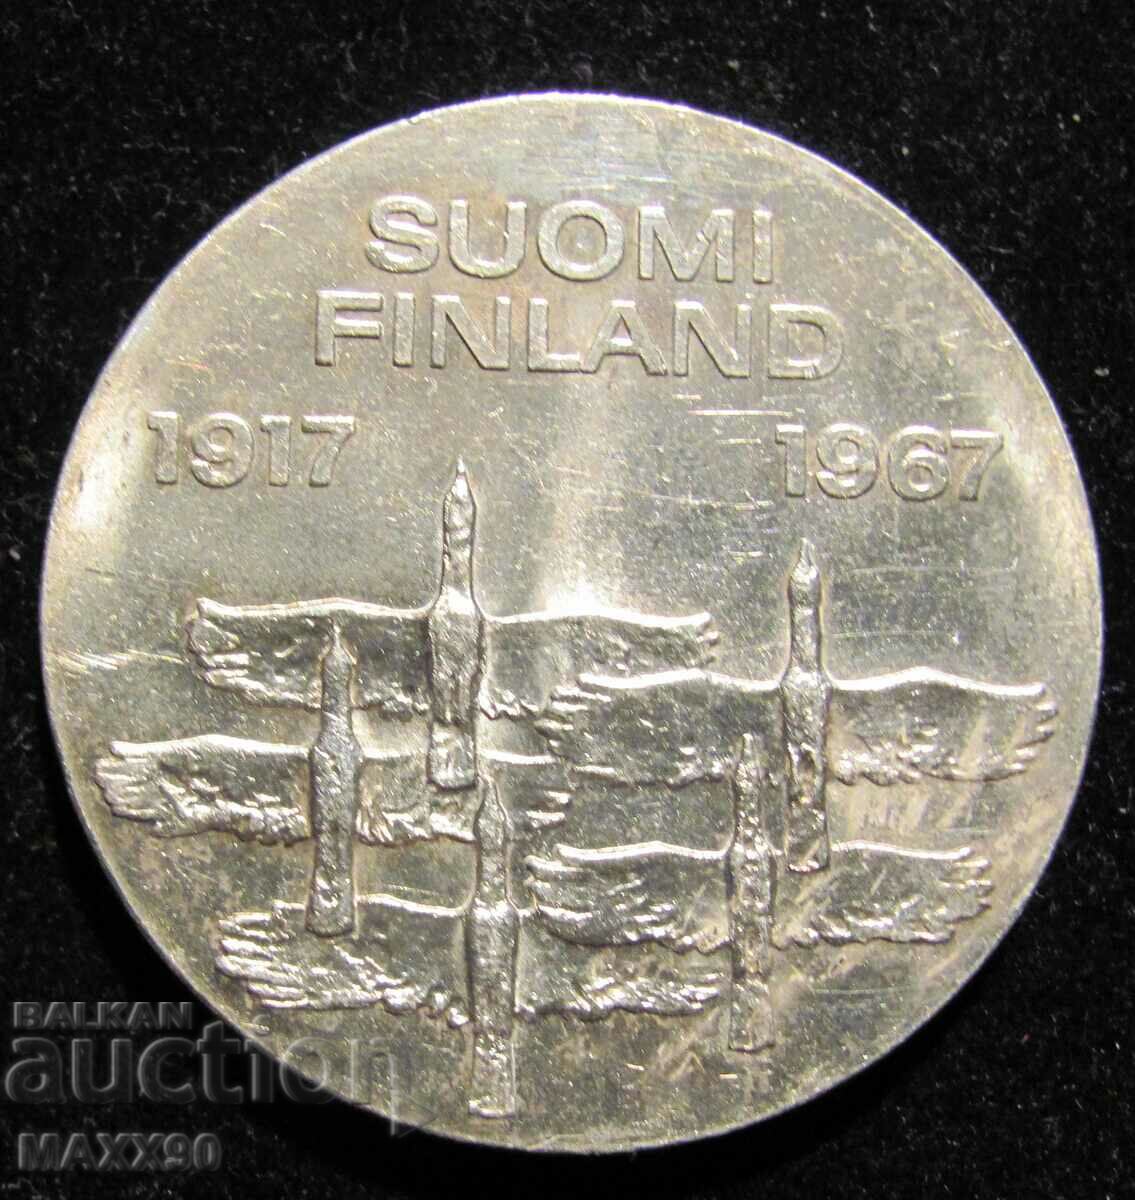 Финландия 50 година независимост,сребро 10 марки